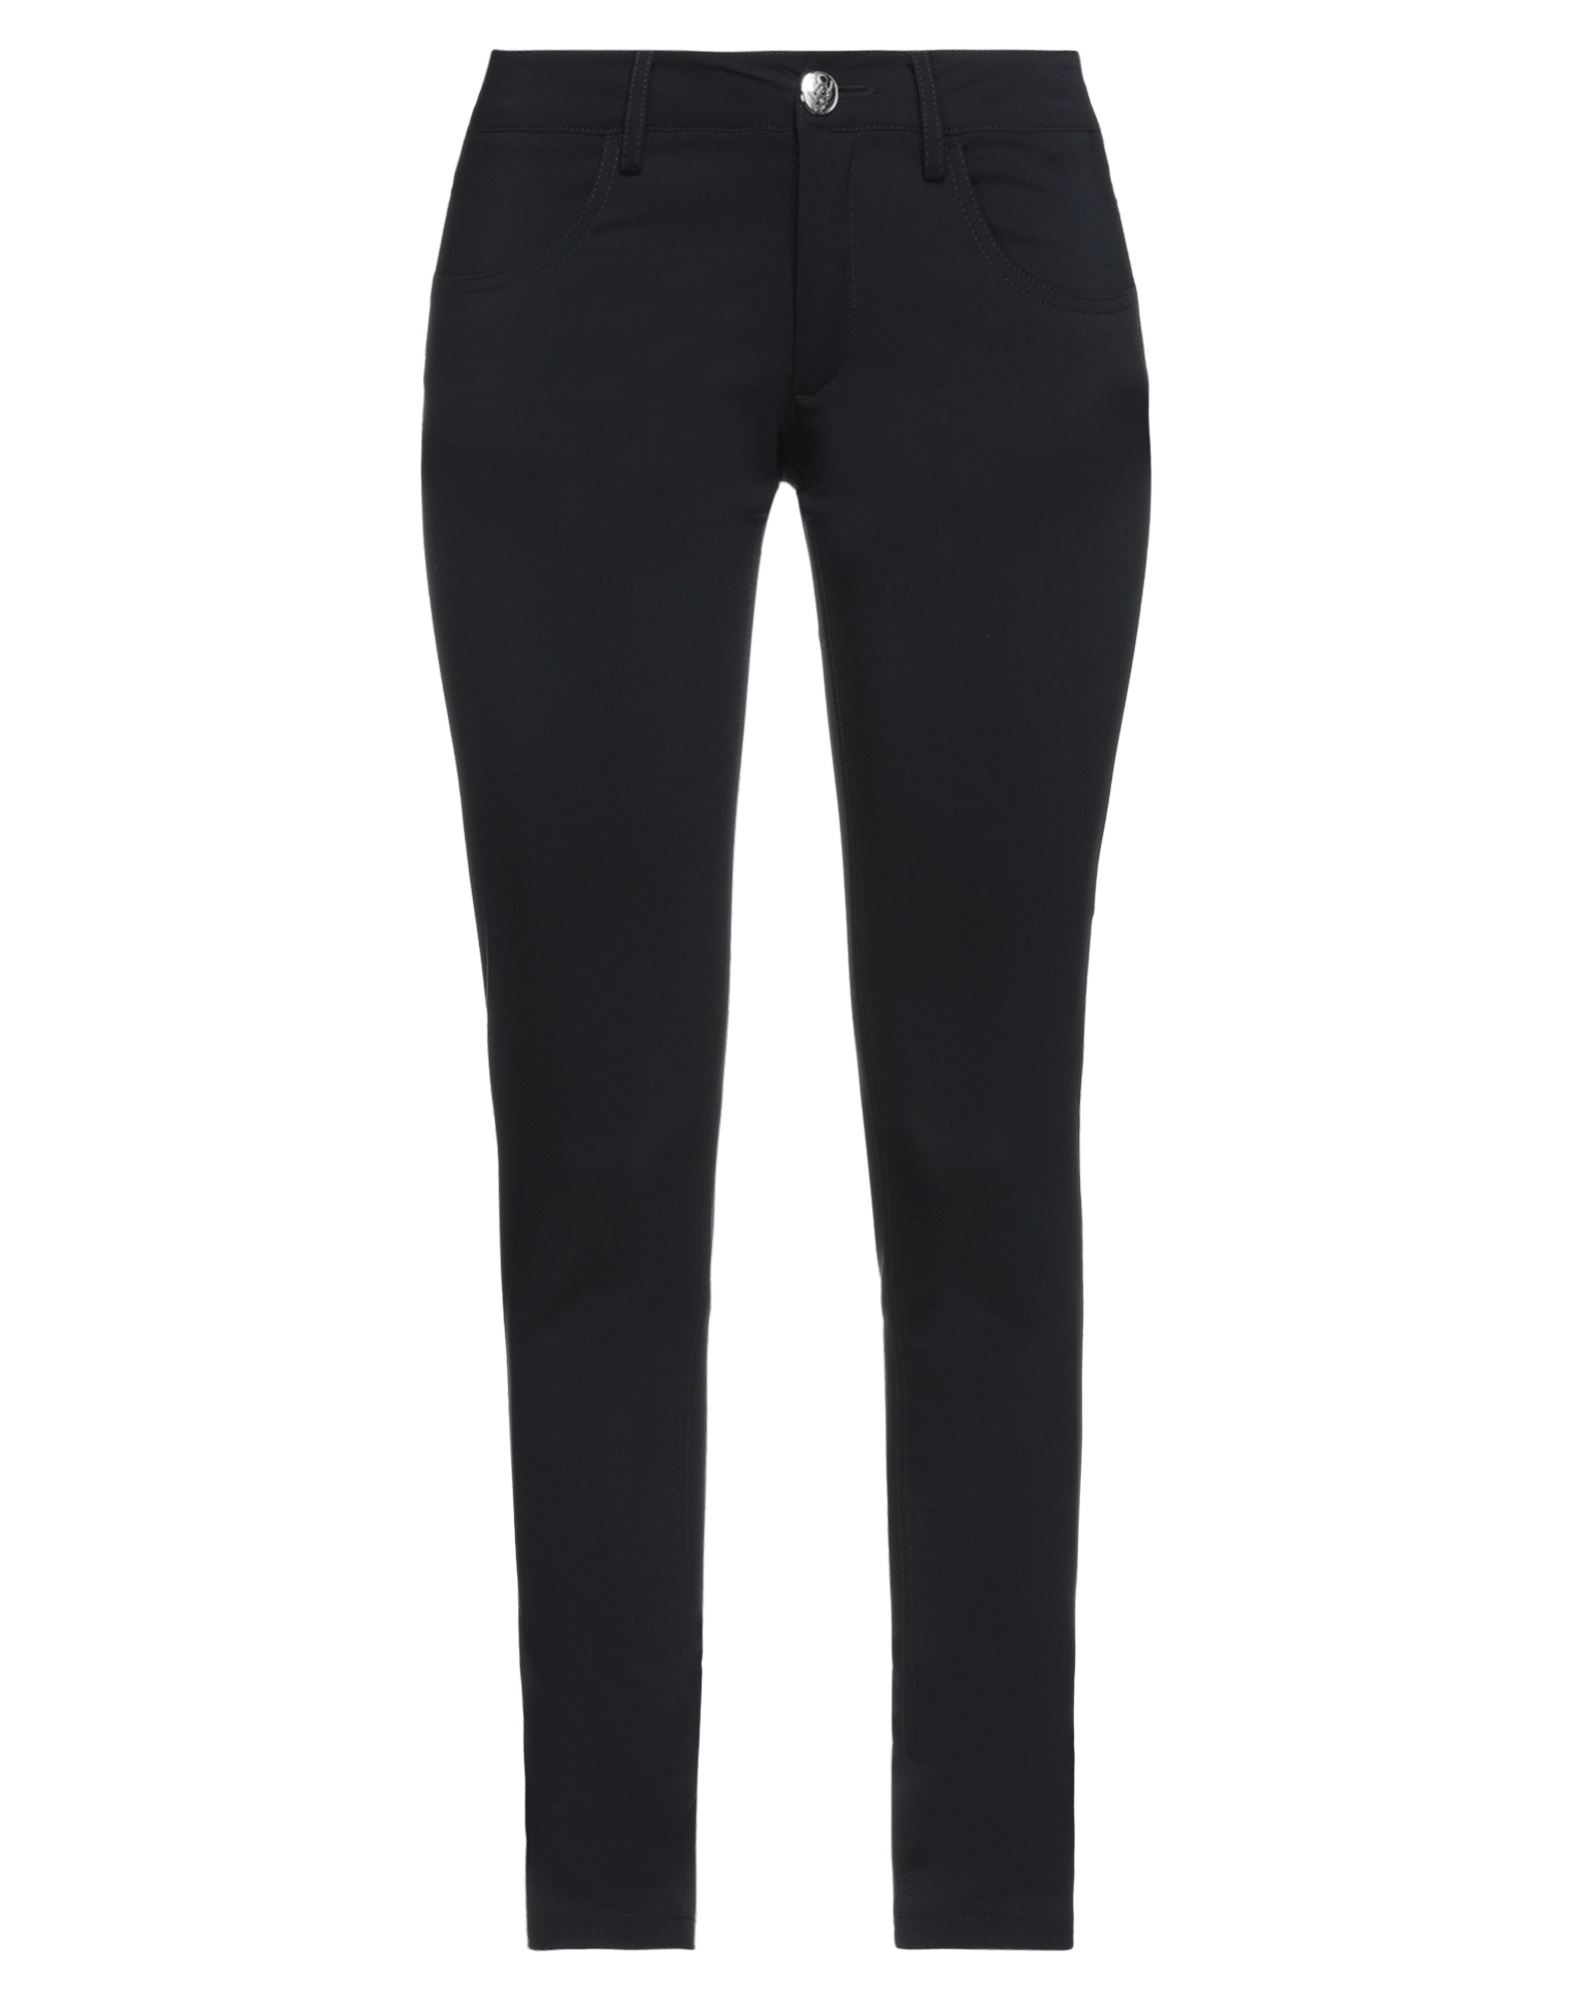 Frankie Morello Woman Pants Black Size 8 Cotton, Polyester, Elastane